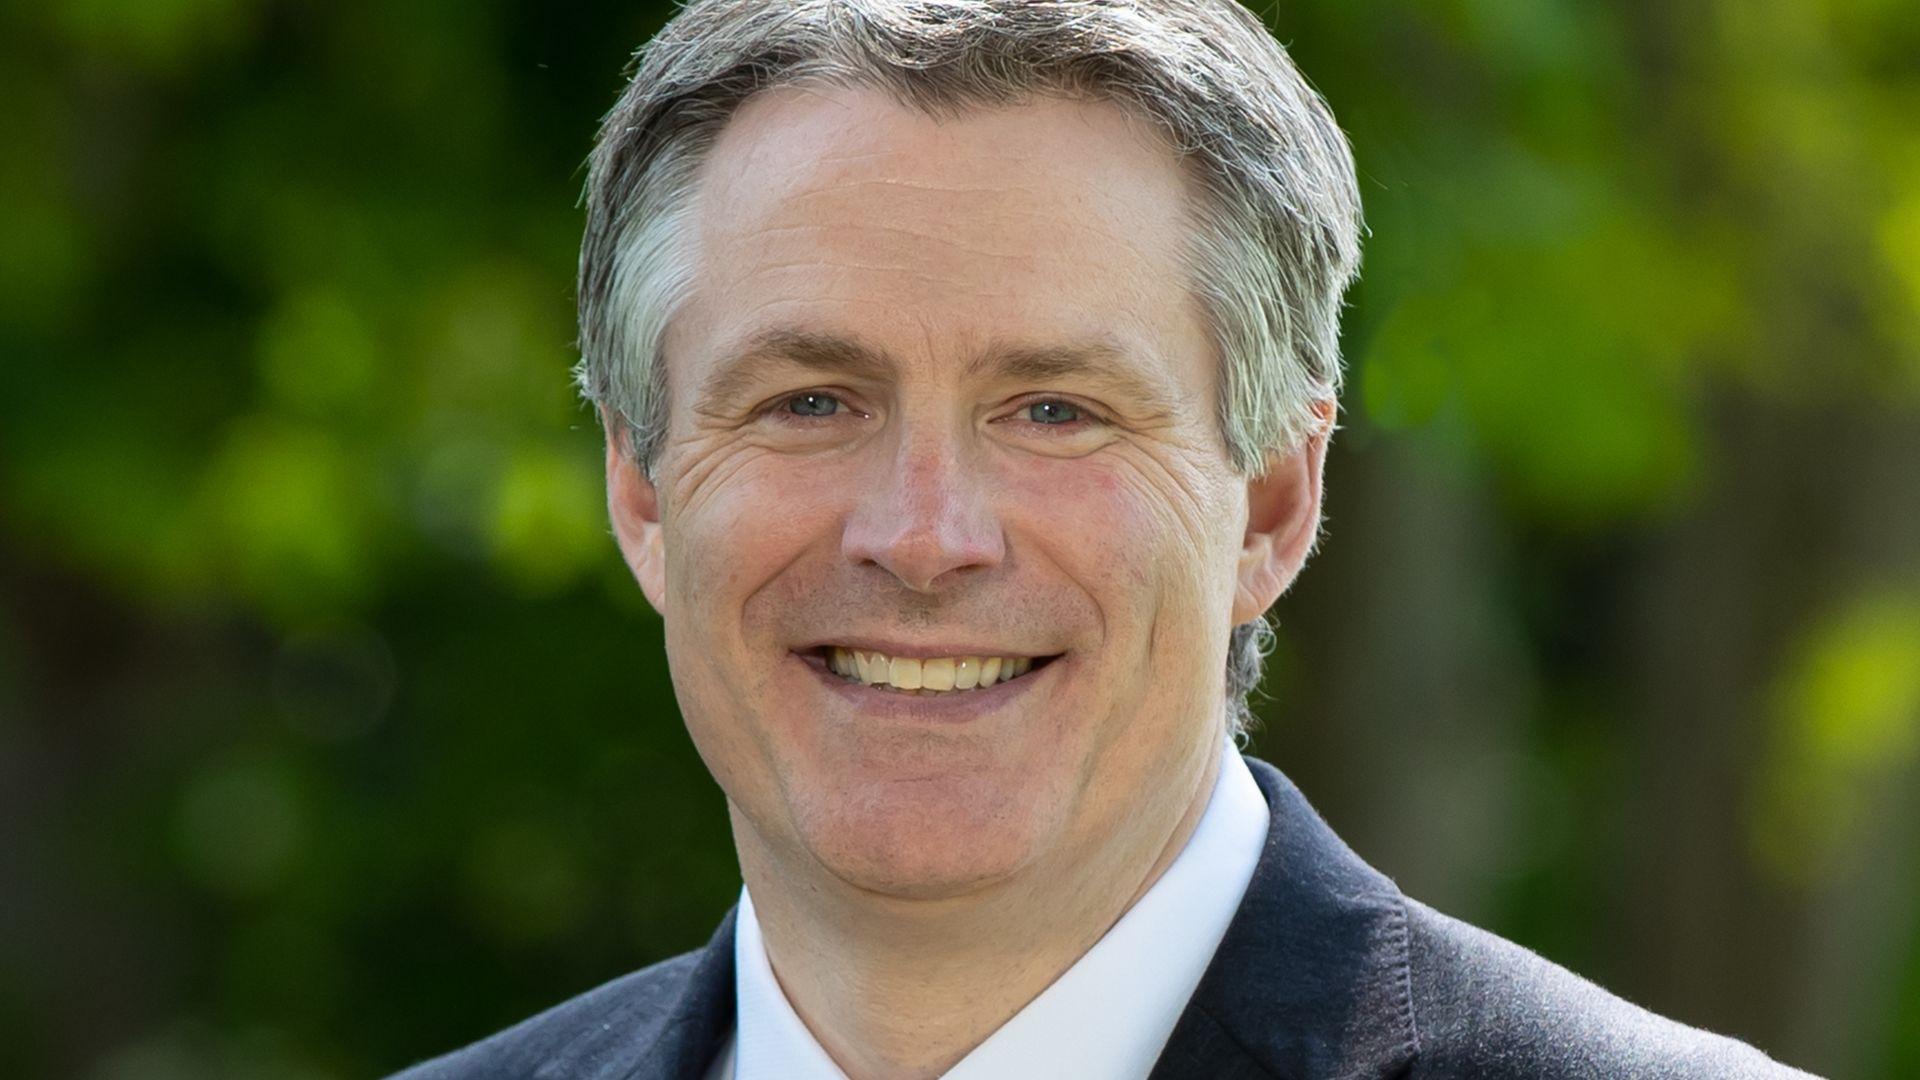 Tom O'Sullivan, Governor